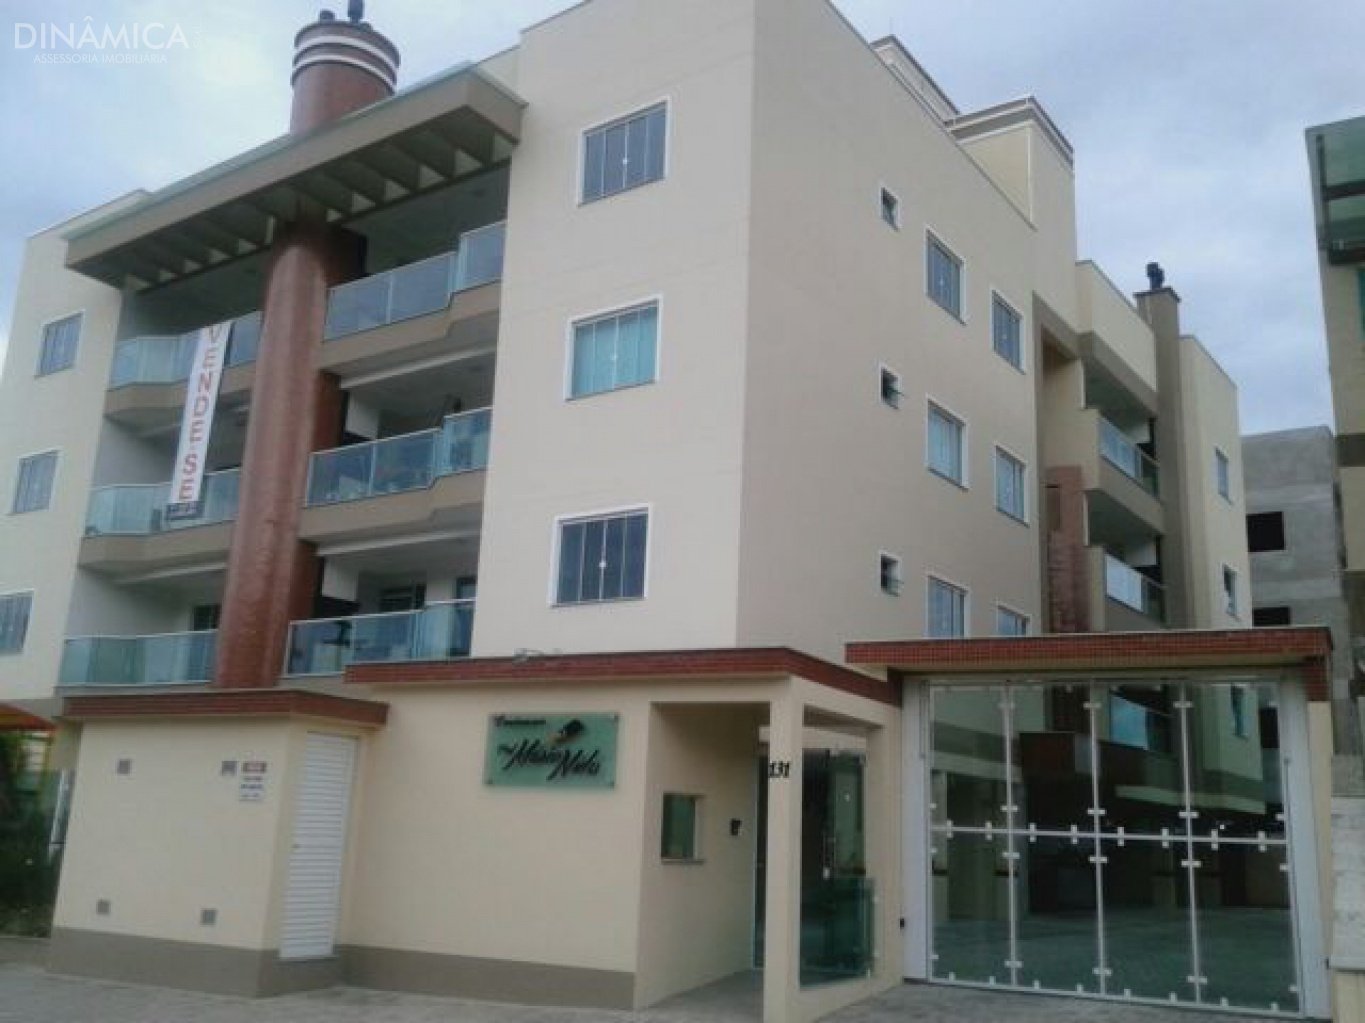 Apartamentos, bairro Figueira, Gaspar SC três dormitórios (sendo uma suíte).